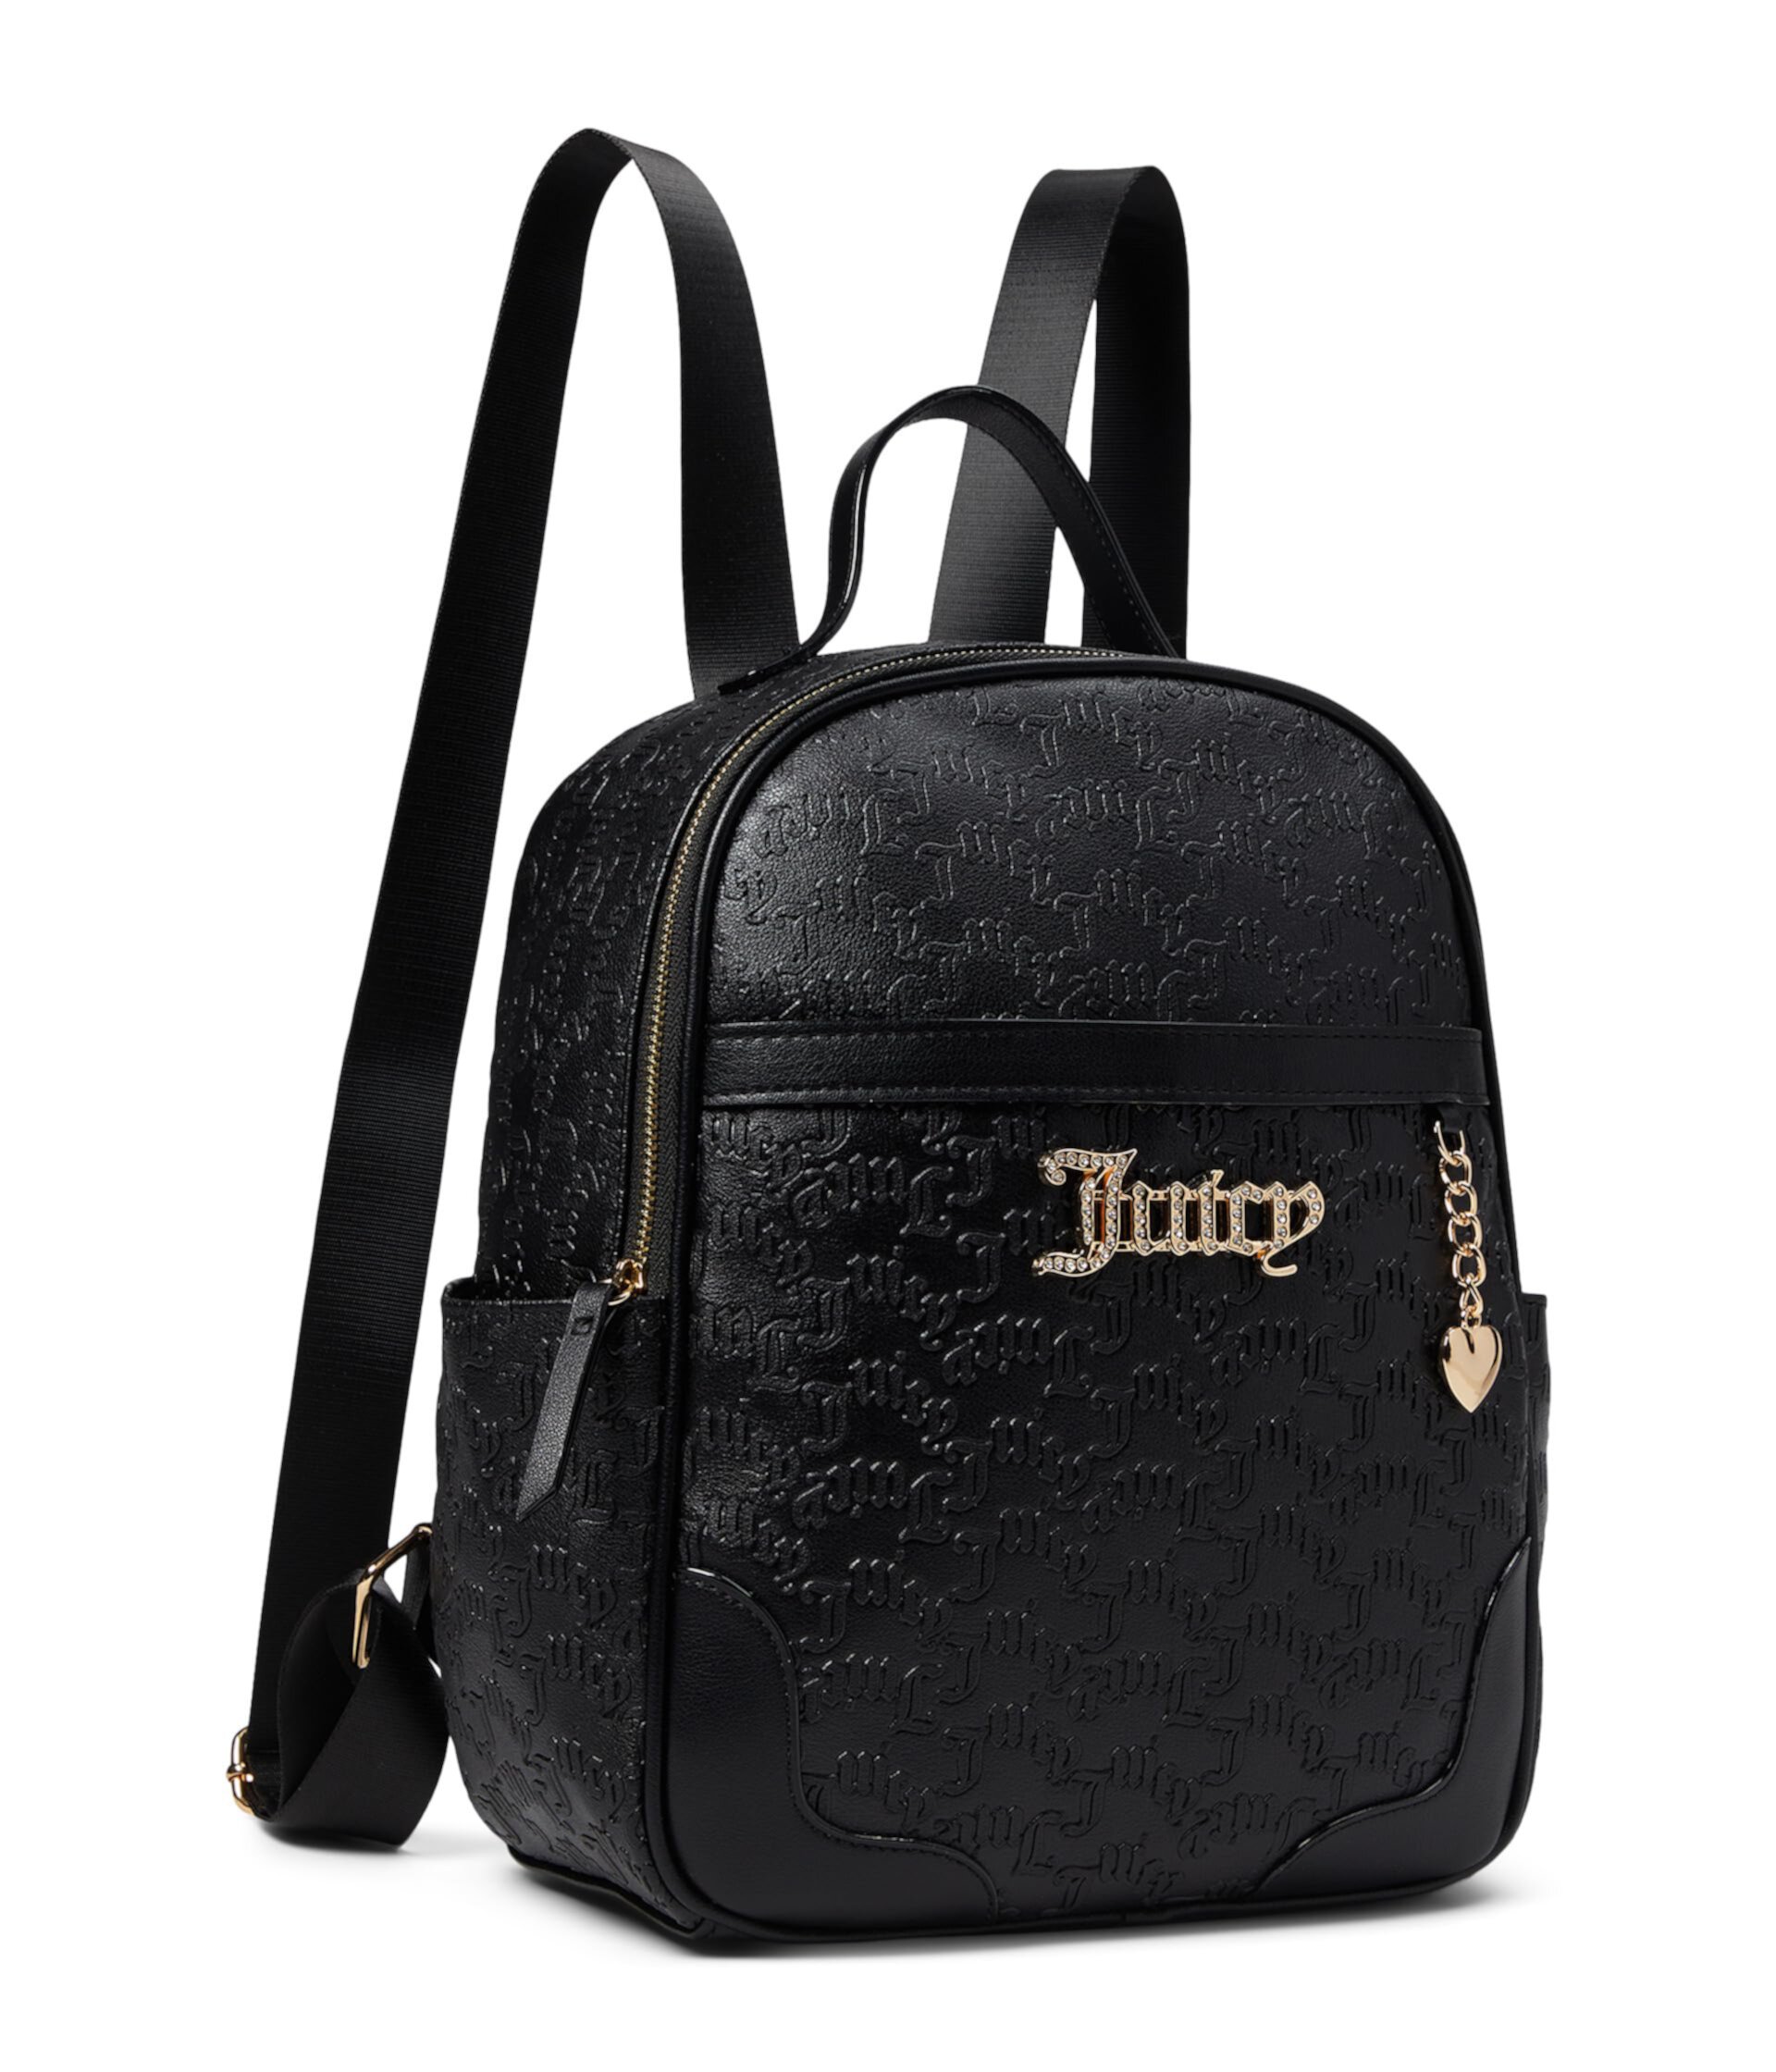 Бессердечный рюкзак Juicy Couture